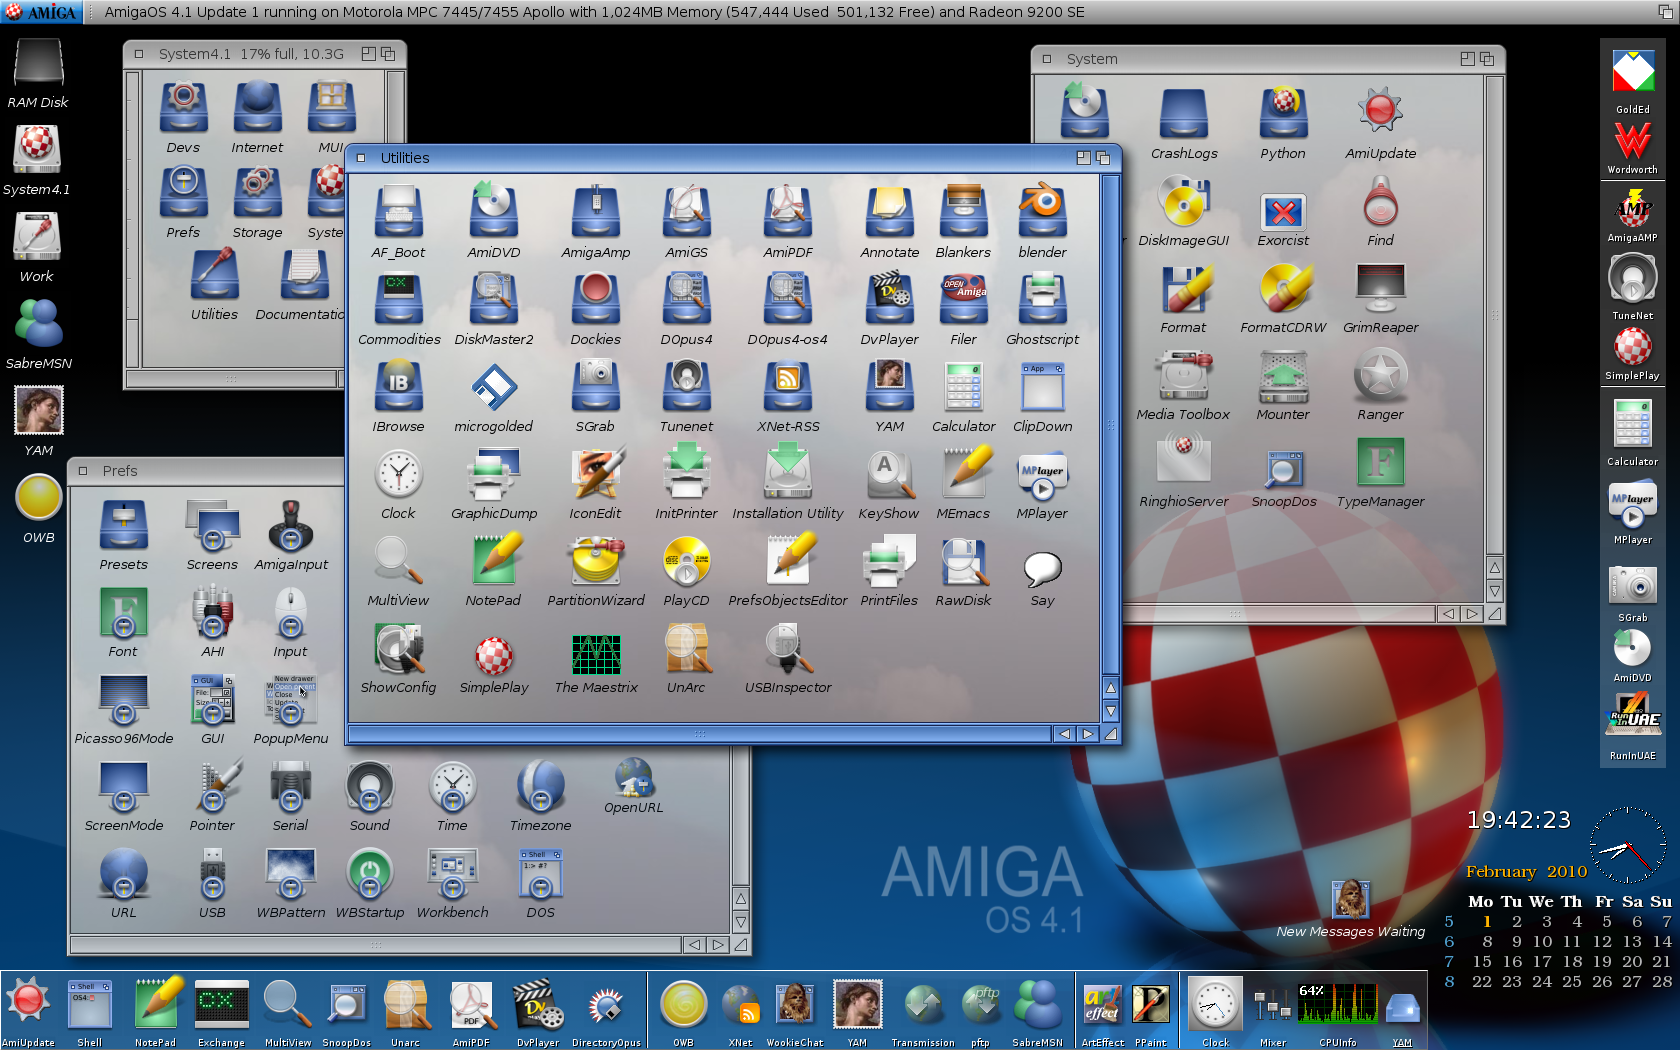 AmigaOS 4.1 Workbench